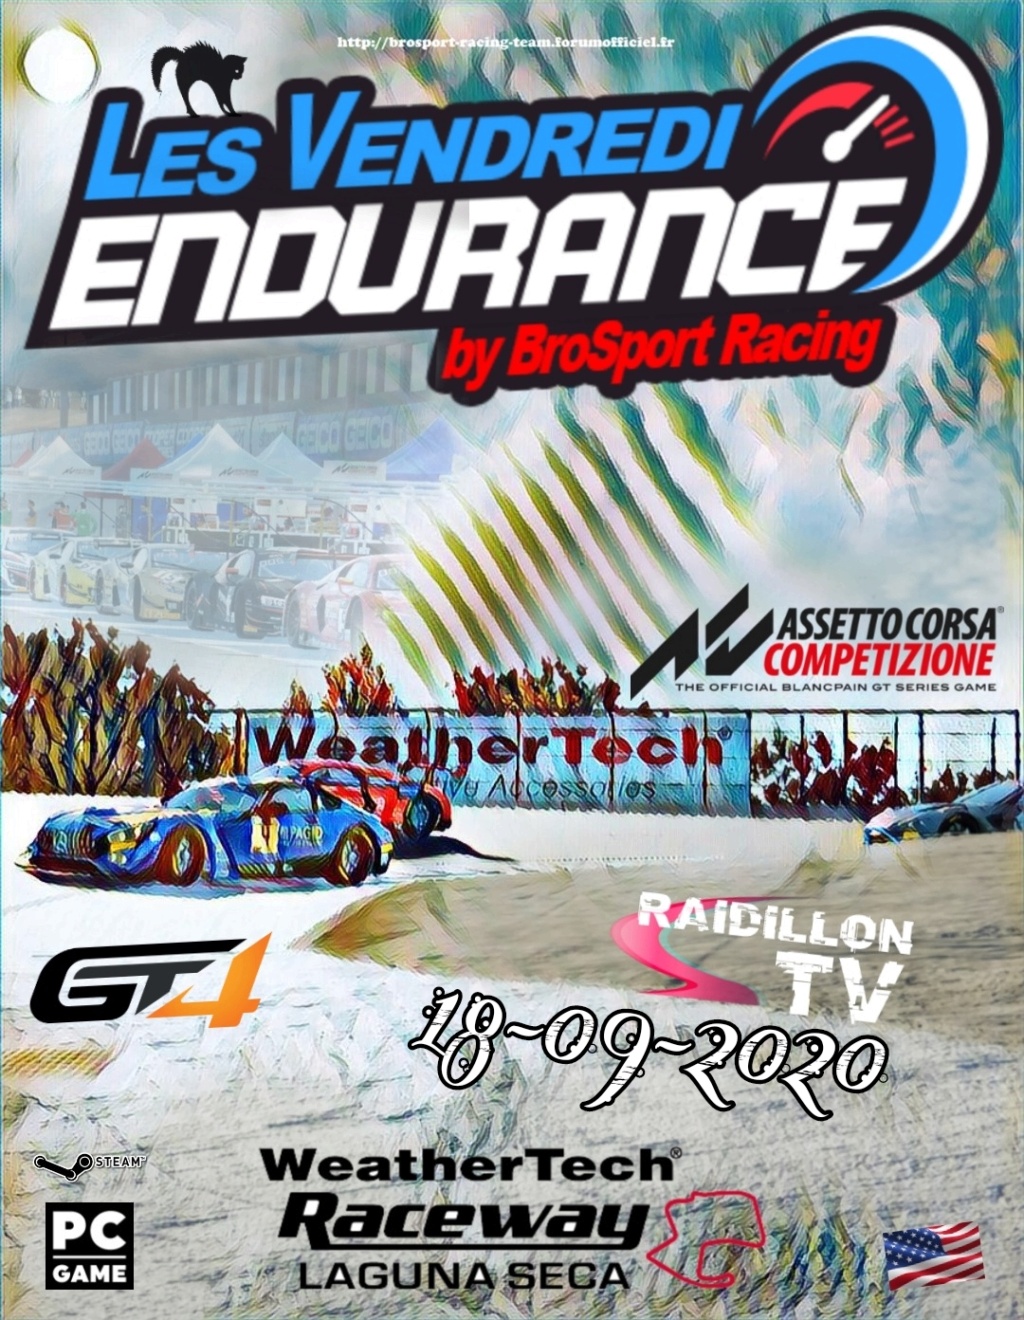 Vendredi endurance du 18-09-2020 (Laguna Seca - GT4) Picsa150